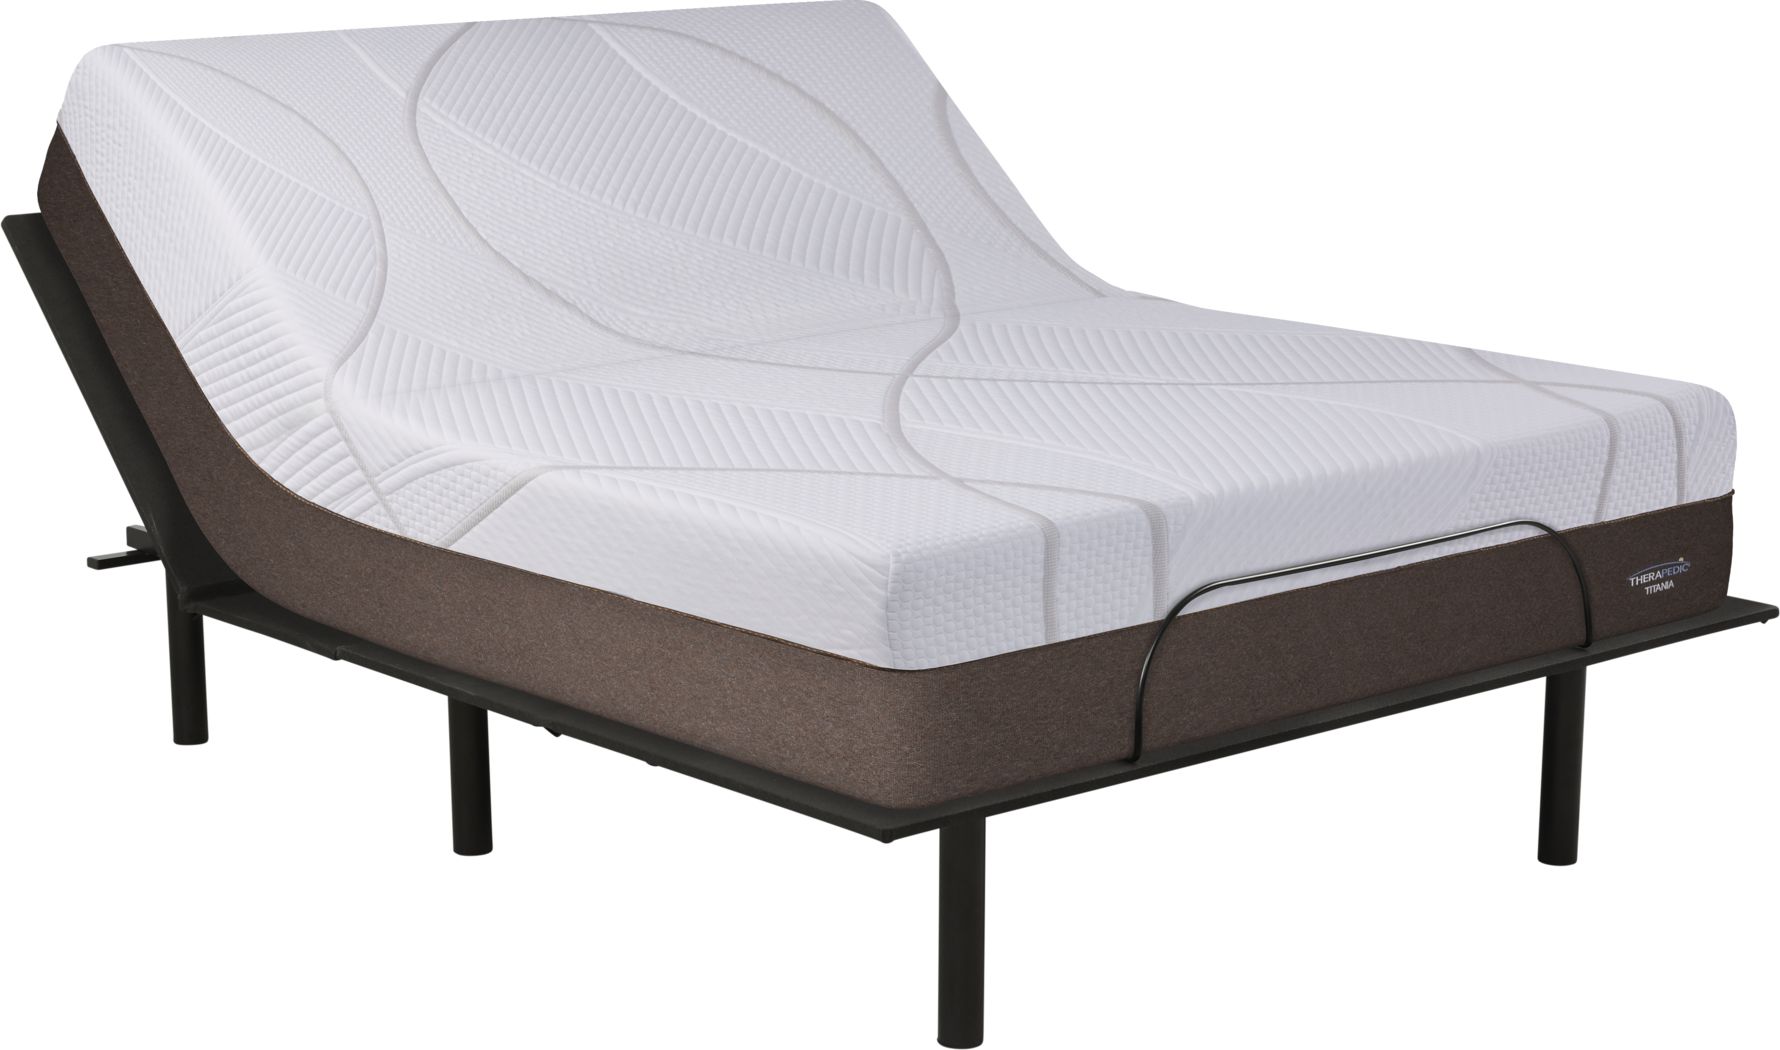 adjustable bed mattresses queen size